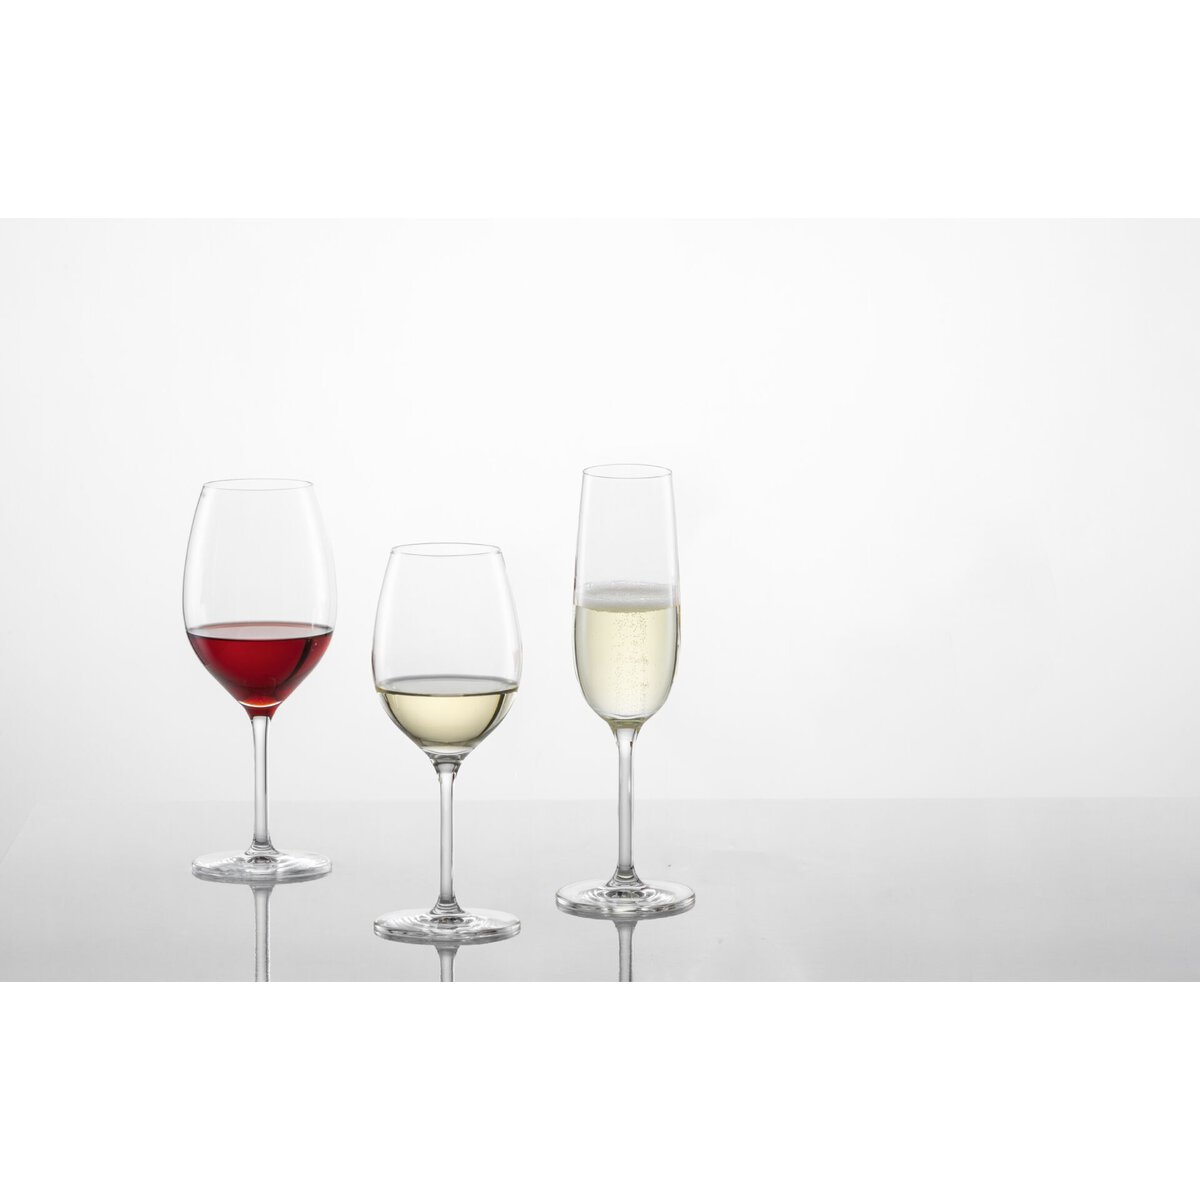 Glasserie "Banquet" Rotweinglas 475ml mit Füllstrich (4)